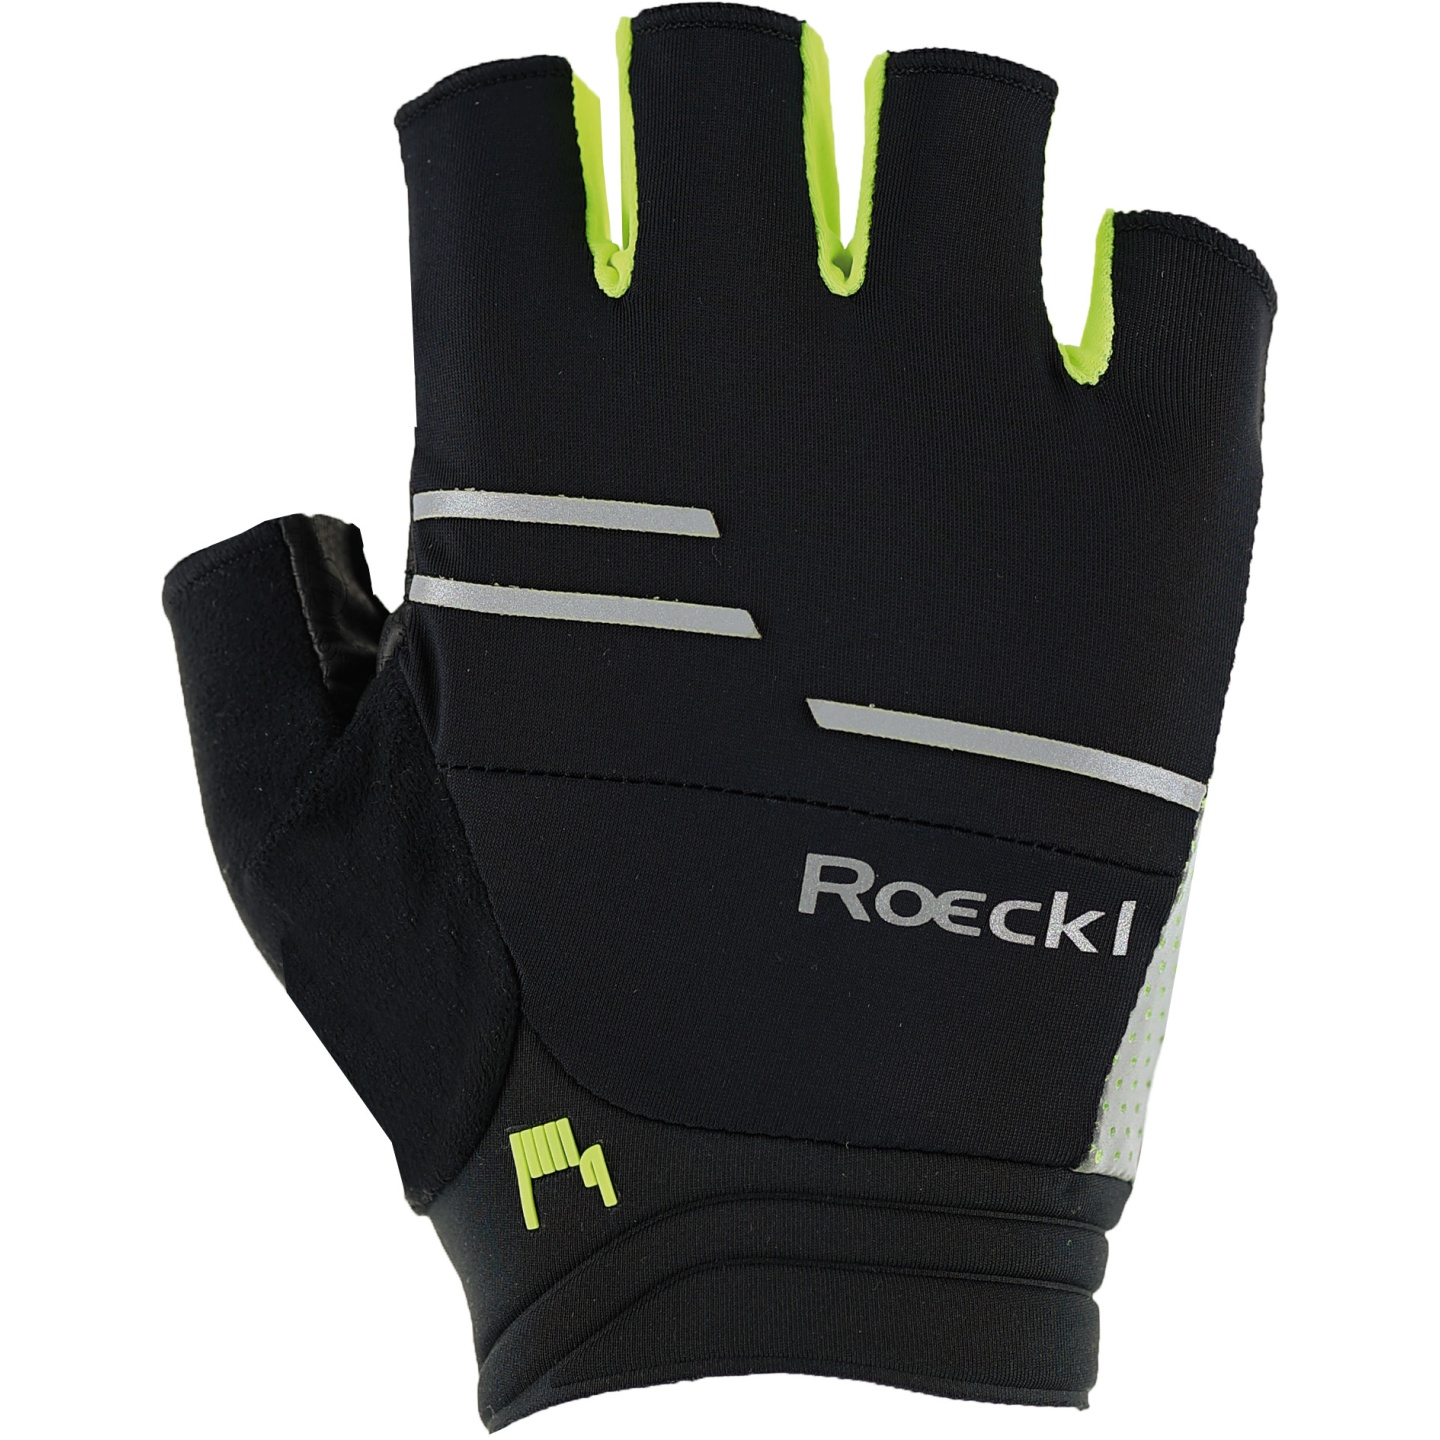 Produktbild von Roeckl Sports Iguna Fahrradhandschuhe - black/fluo yellow 9210